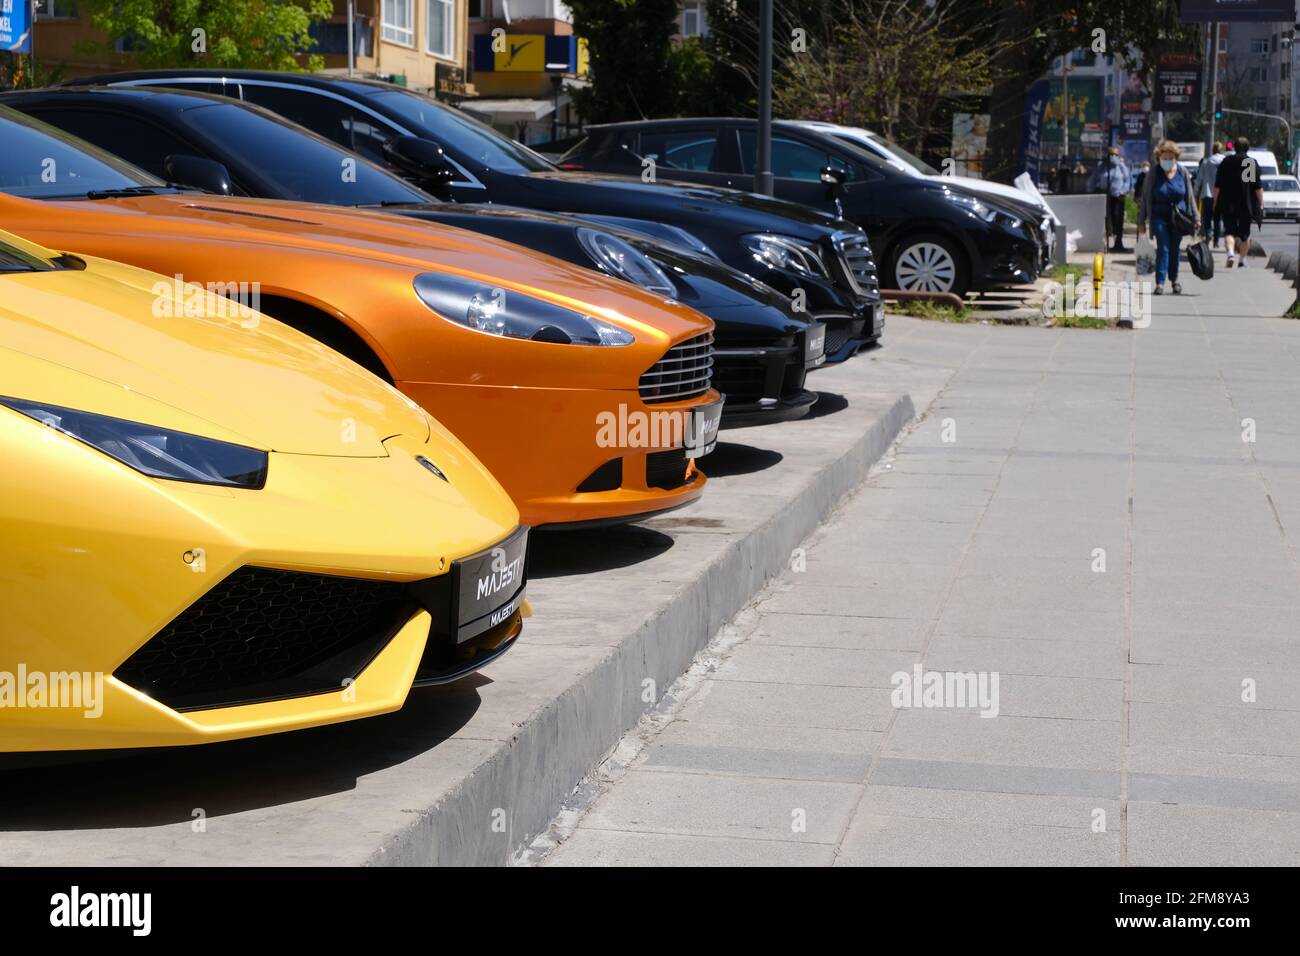 Istanbul, Turchia - 29 aprile 2021 : automobili sportive di lusso in vendita, come Lamborghini, Aston Martin, Mercedes Benz, Porsche sono insieme in una strada di Kad Foto Stock